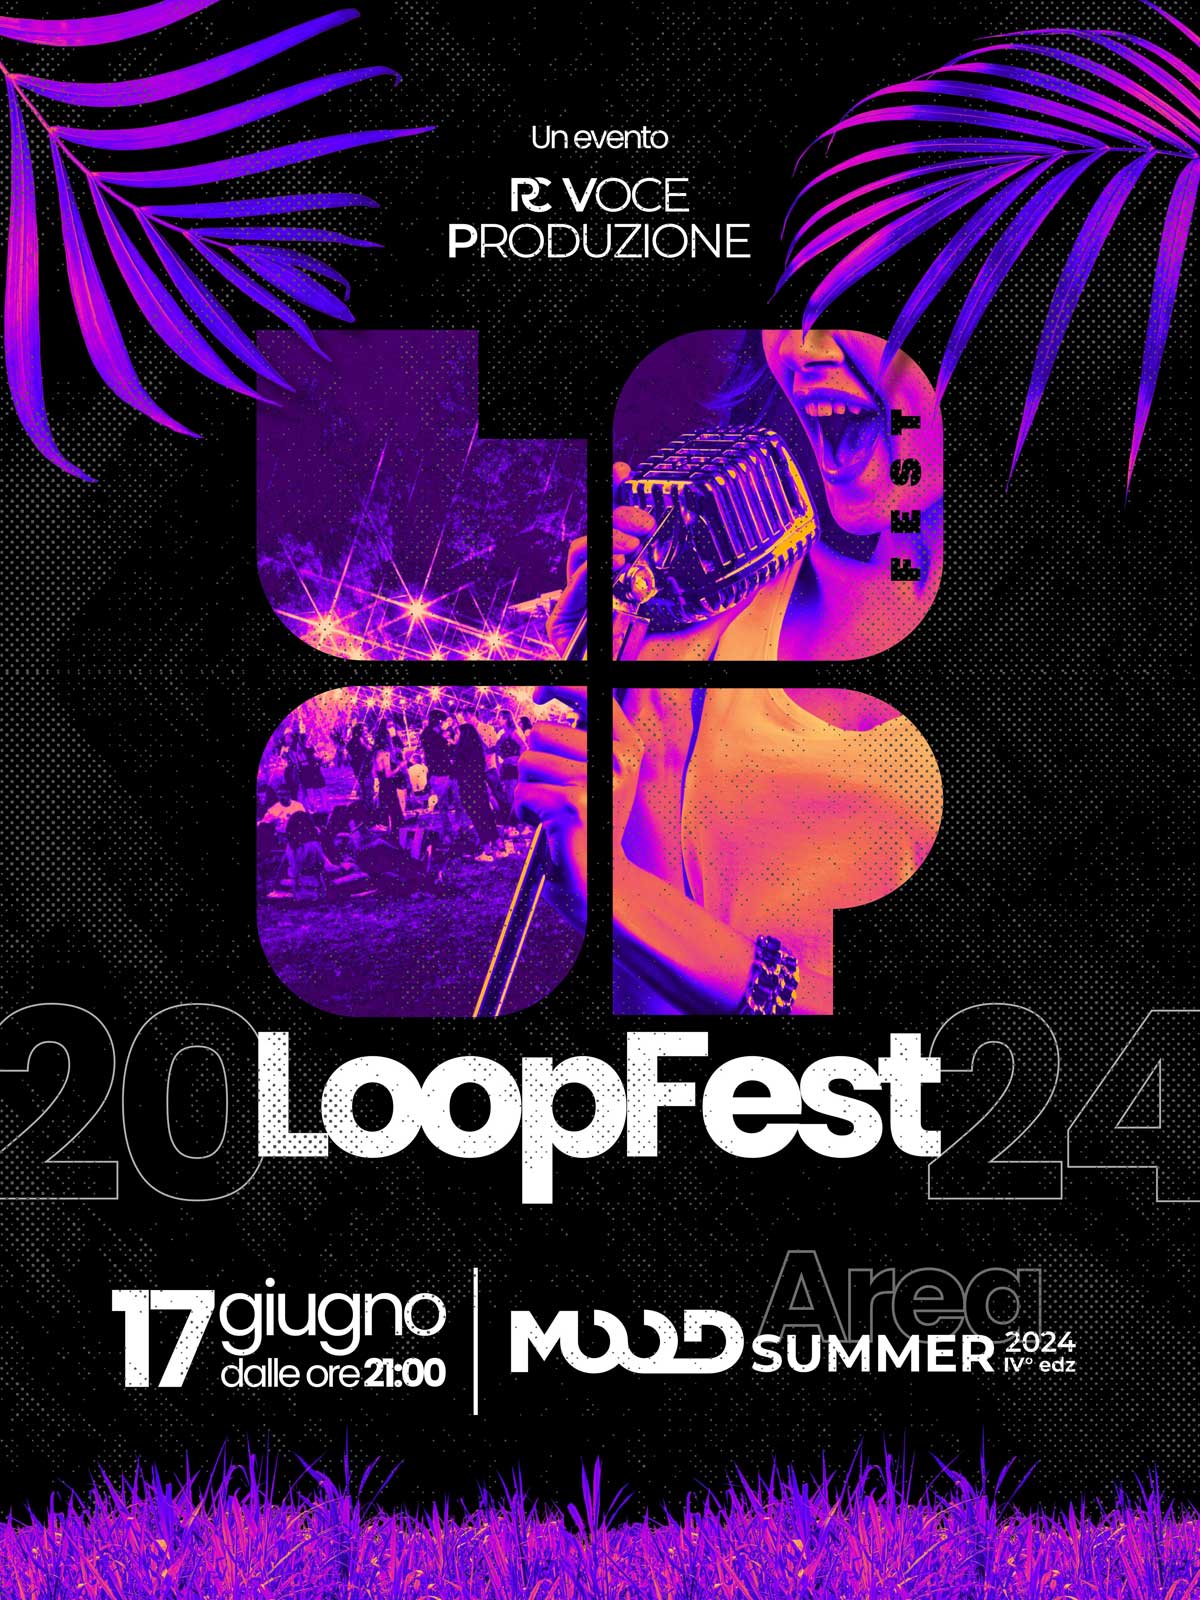 Loop Fest il contest organizzato da RC Voce Produzione, lunedì 17 giugno a Rende